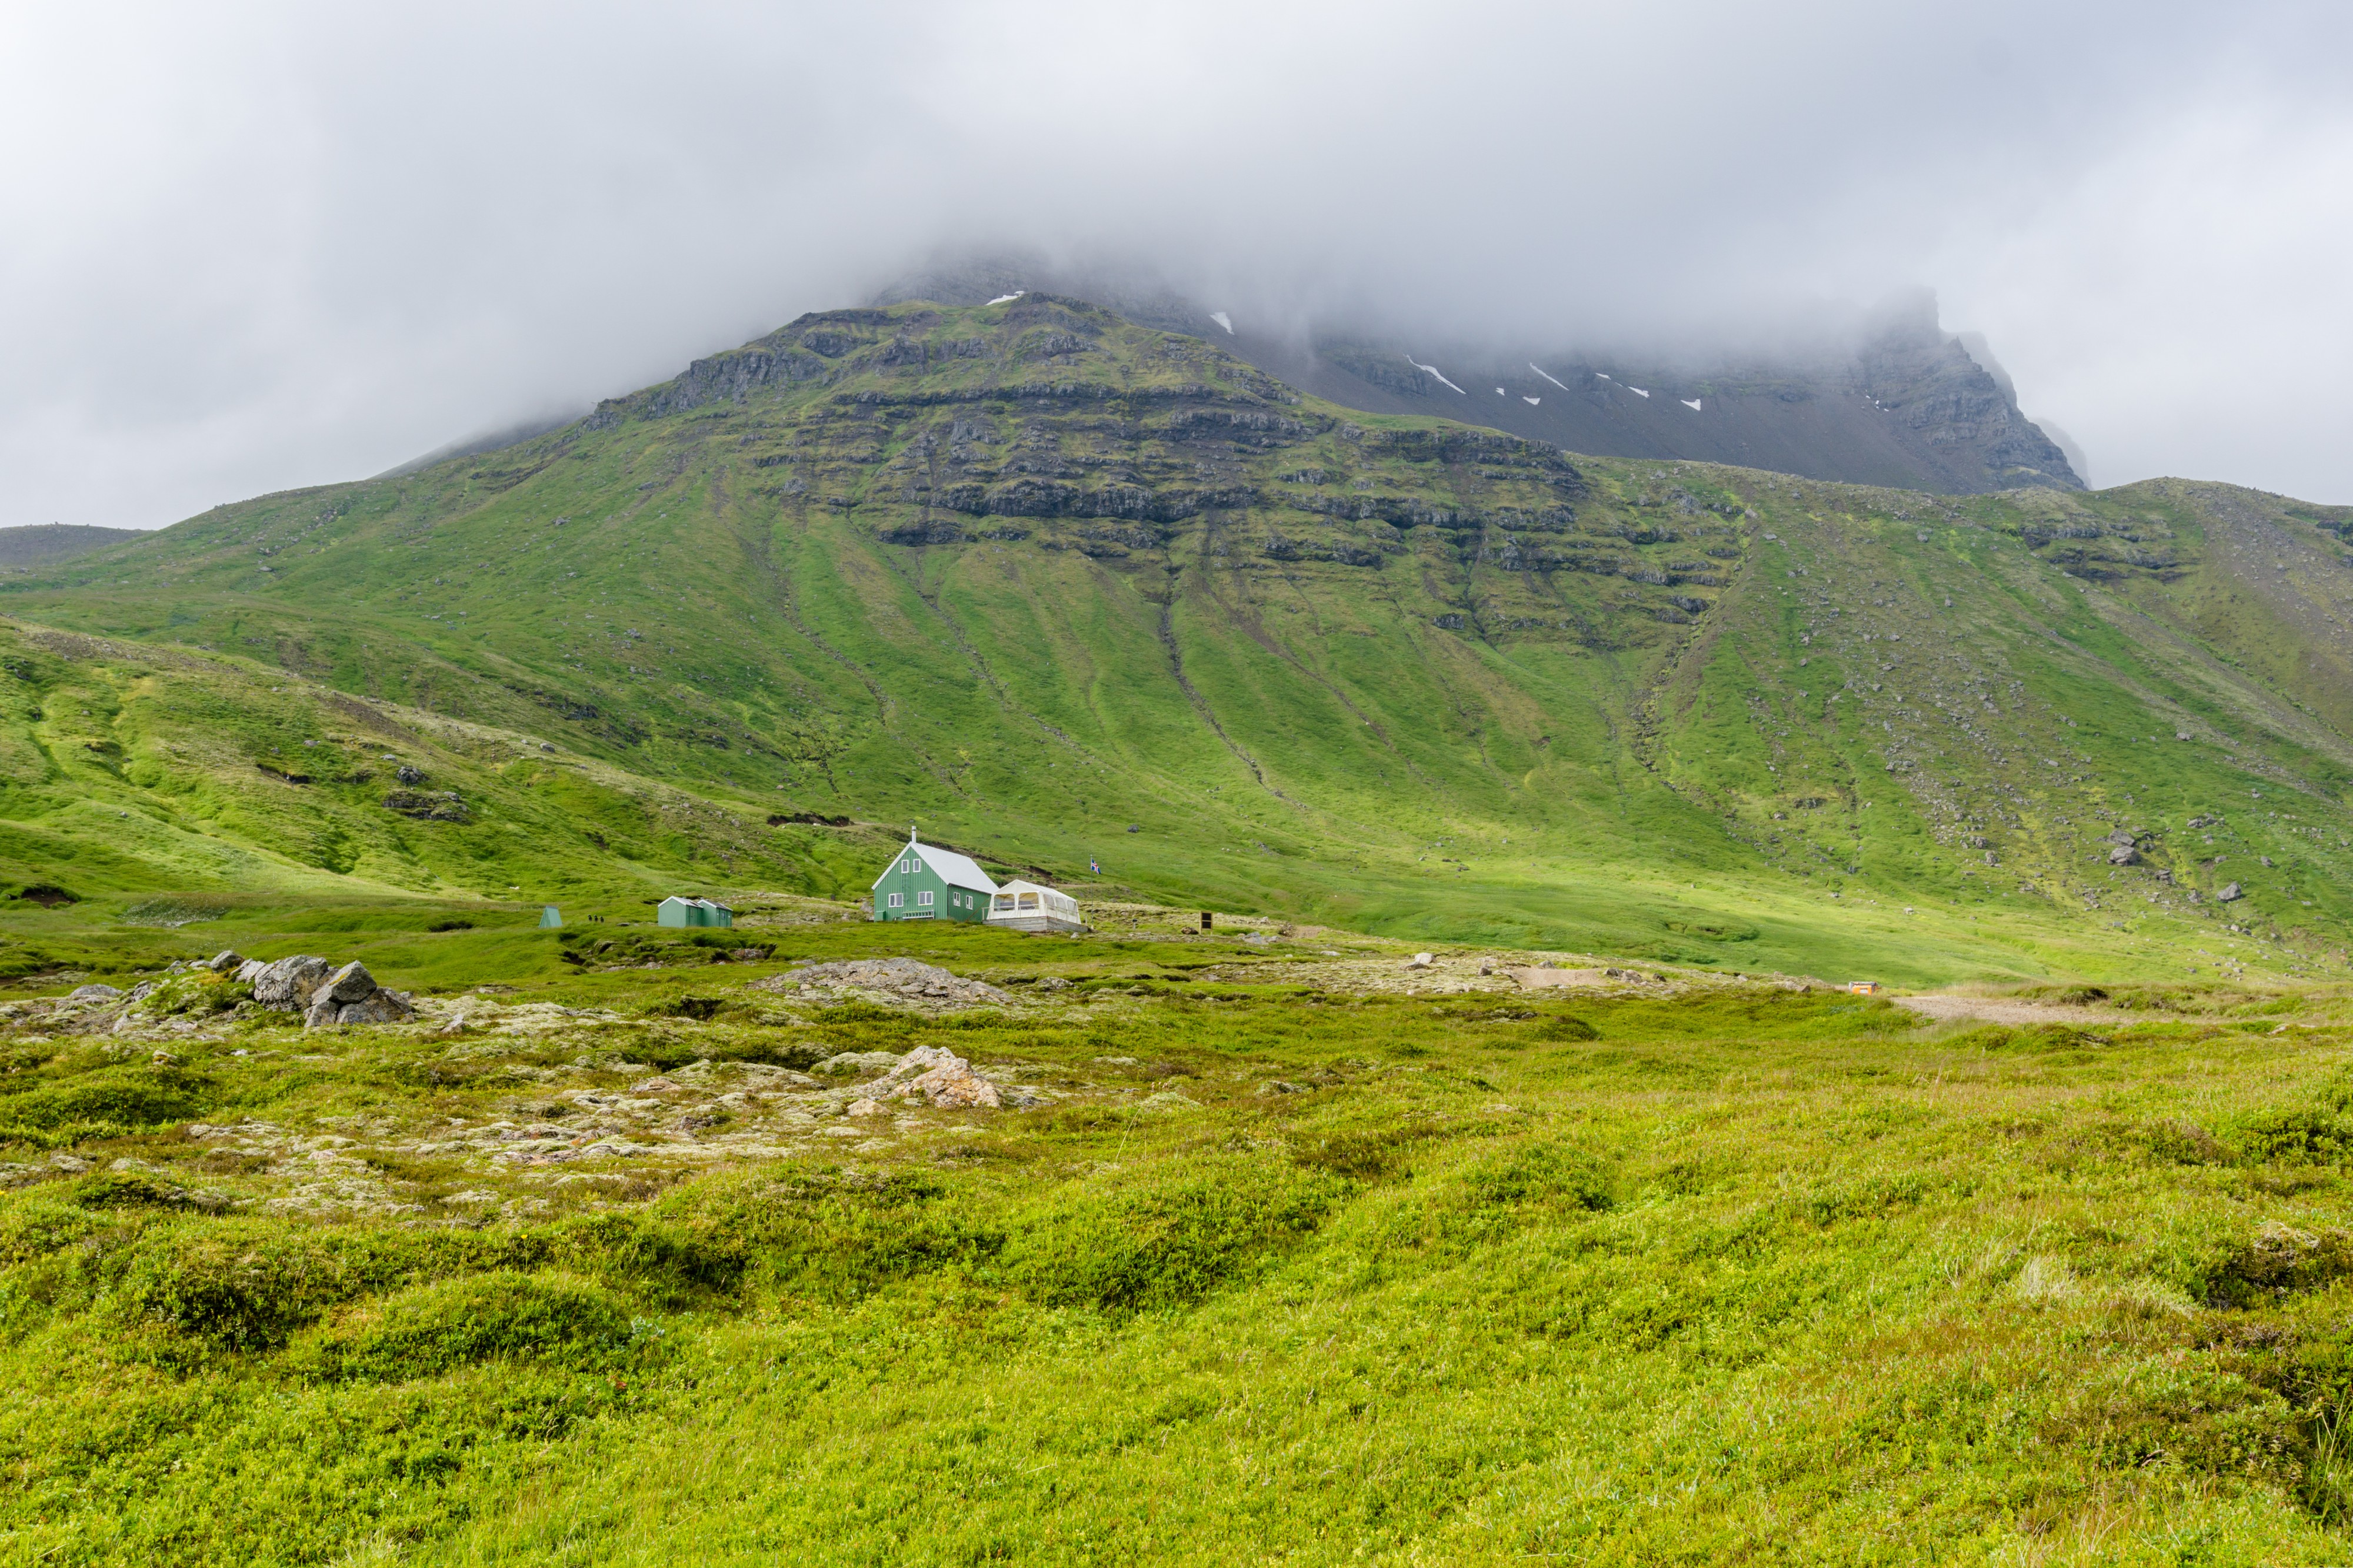 Mt Skælingur, taken from Víknaslóðir Trail in Eastern fjords, Iceland 11